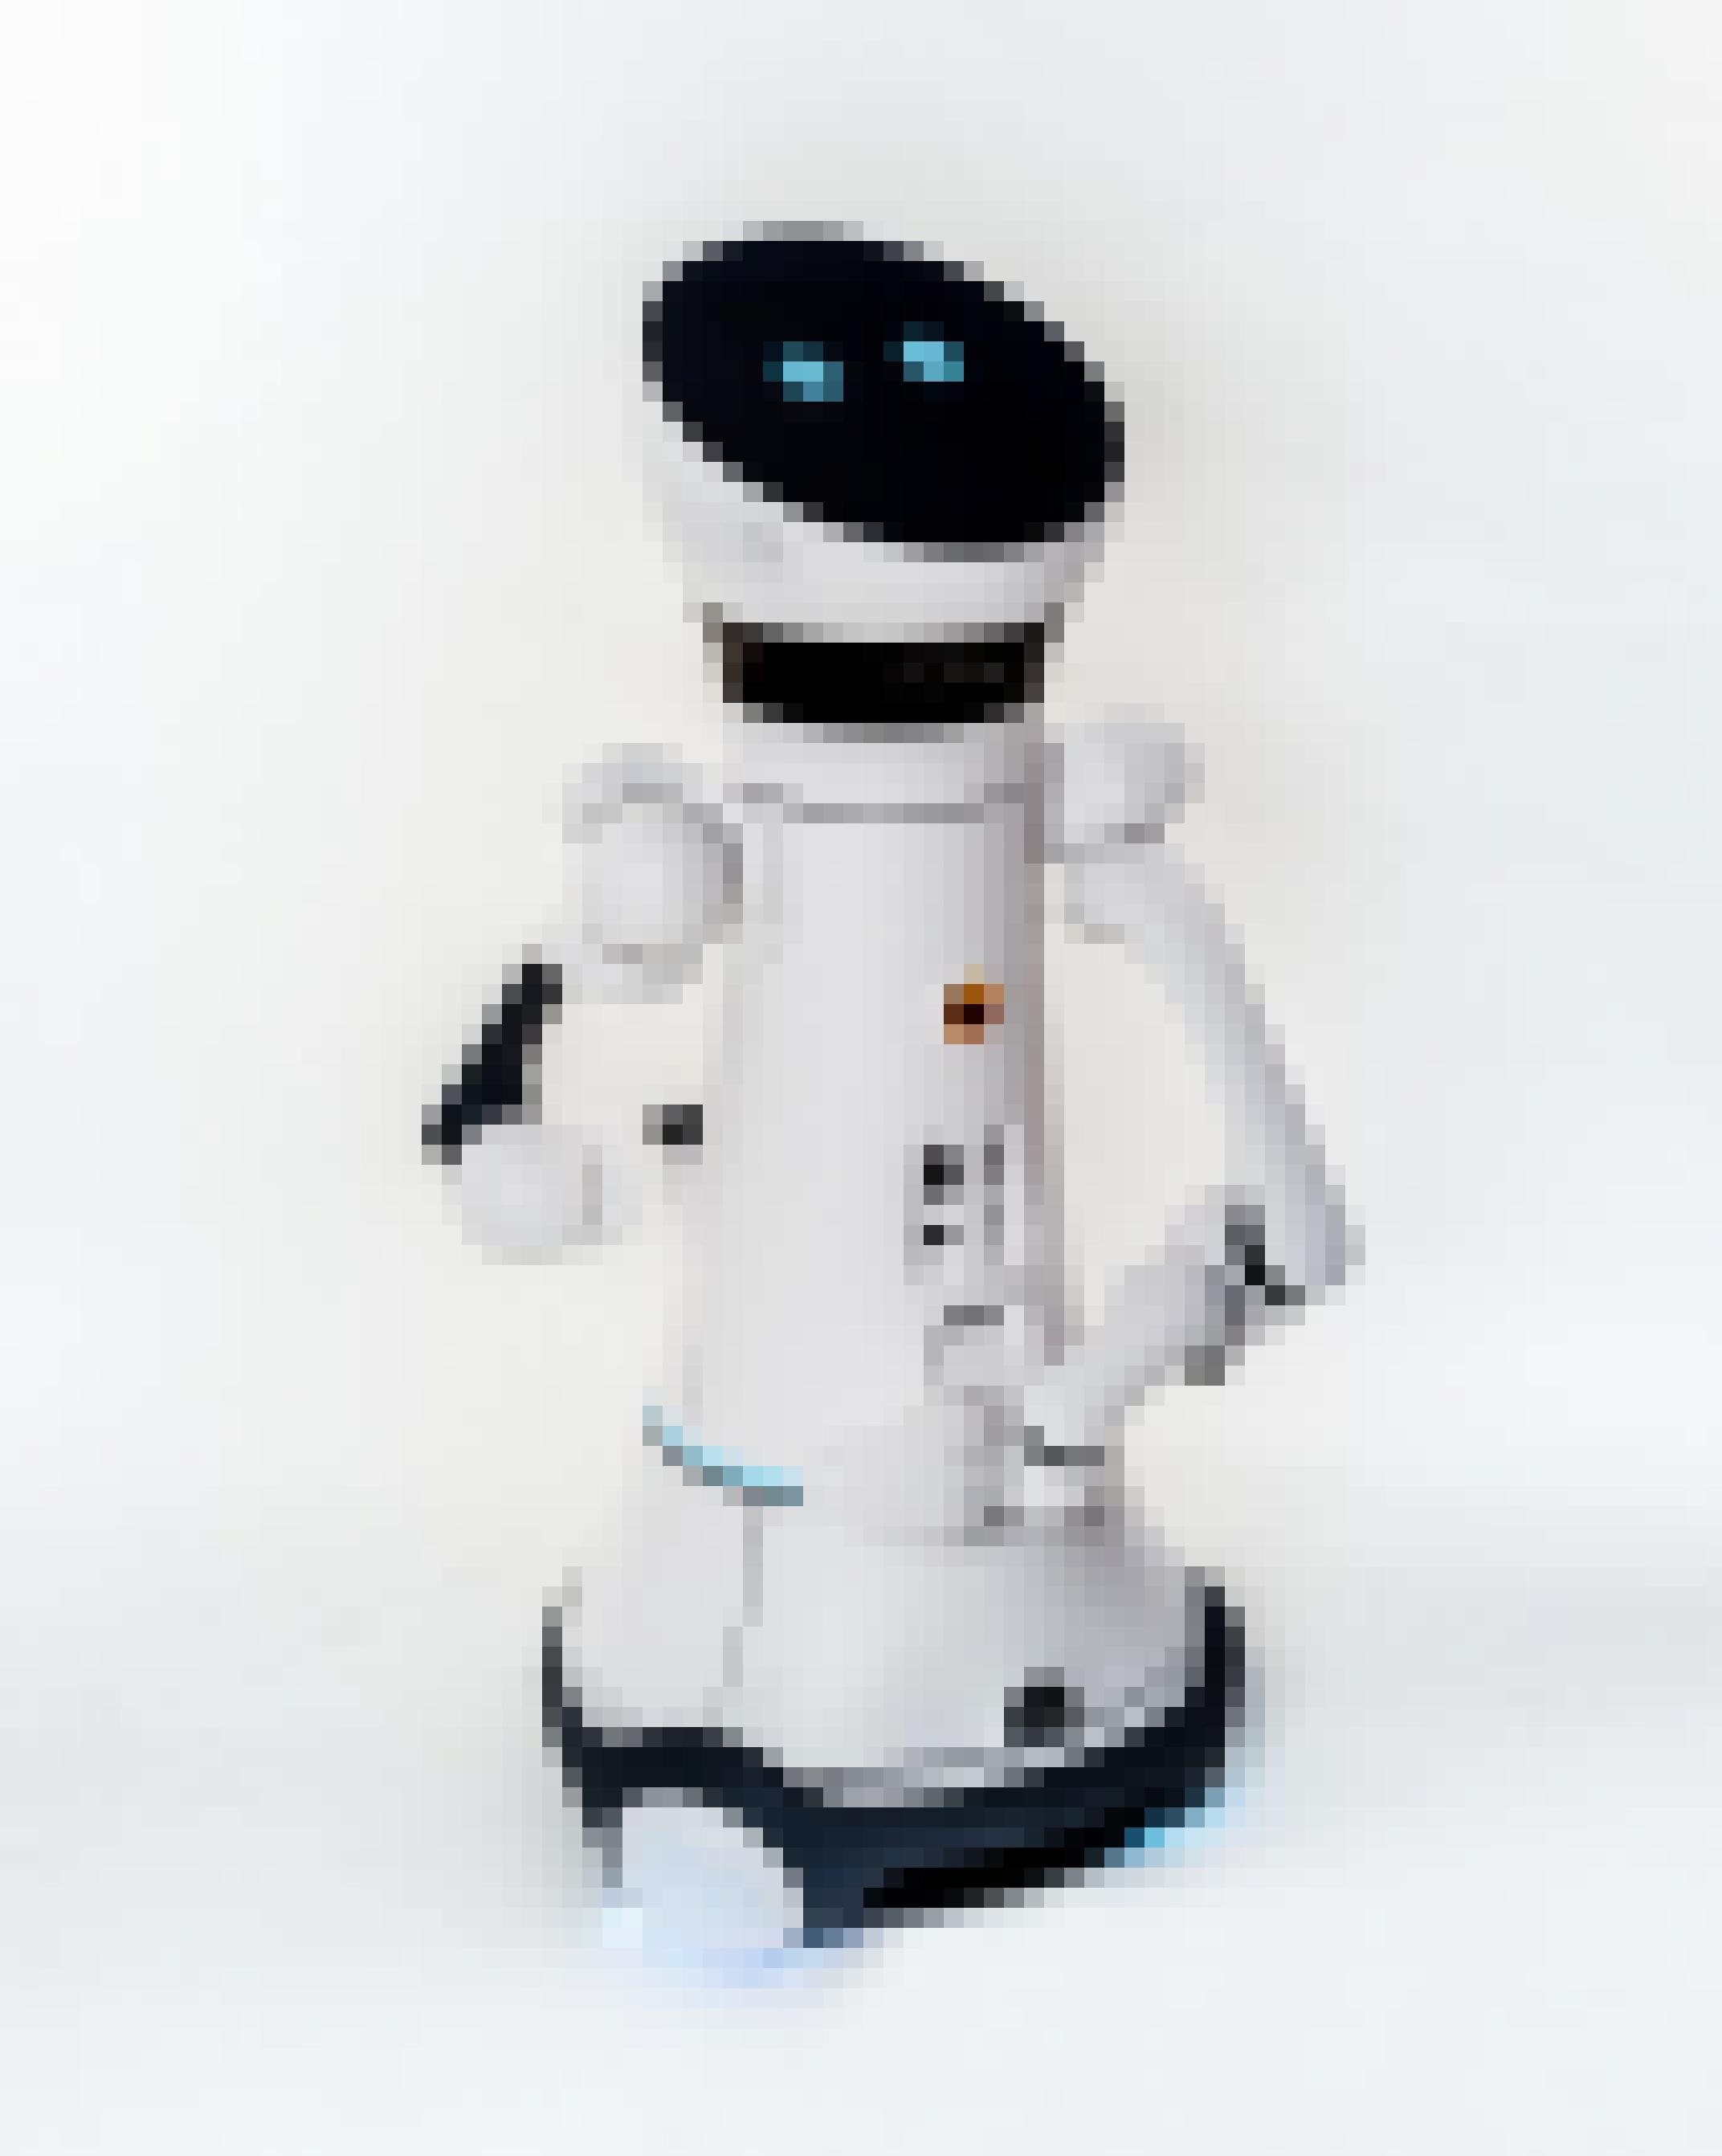 Der Care-O-bot ist ein Pflegeroboter auf Rollen mit angedeutetem Kopf und Armen.